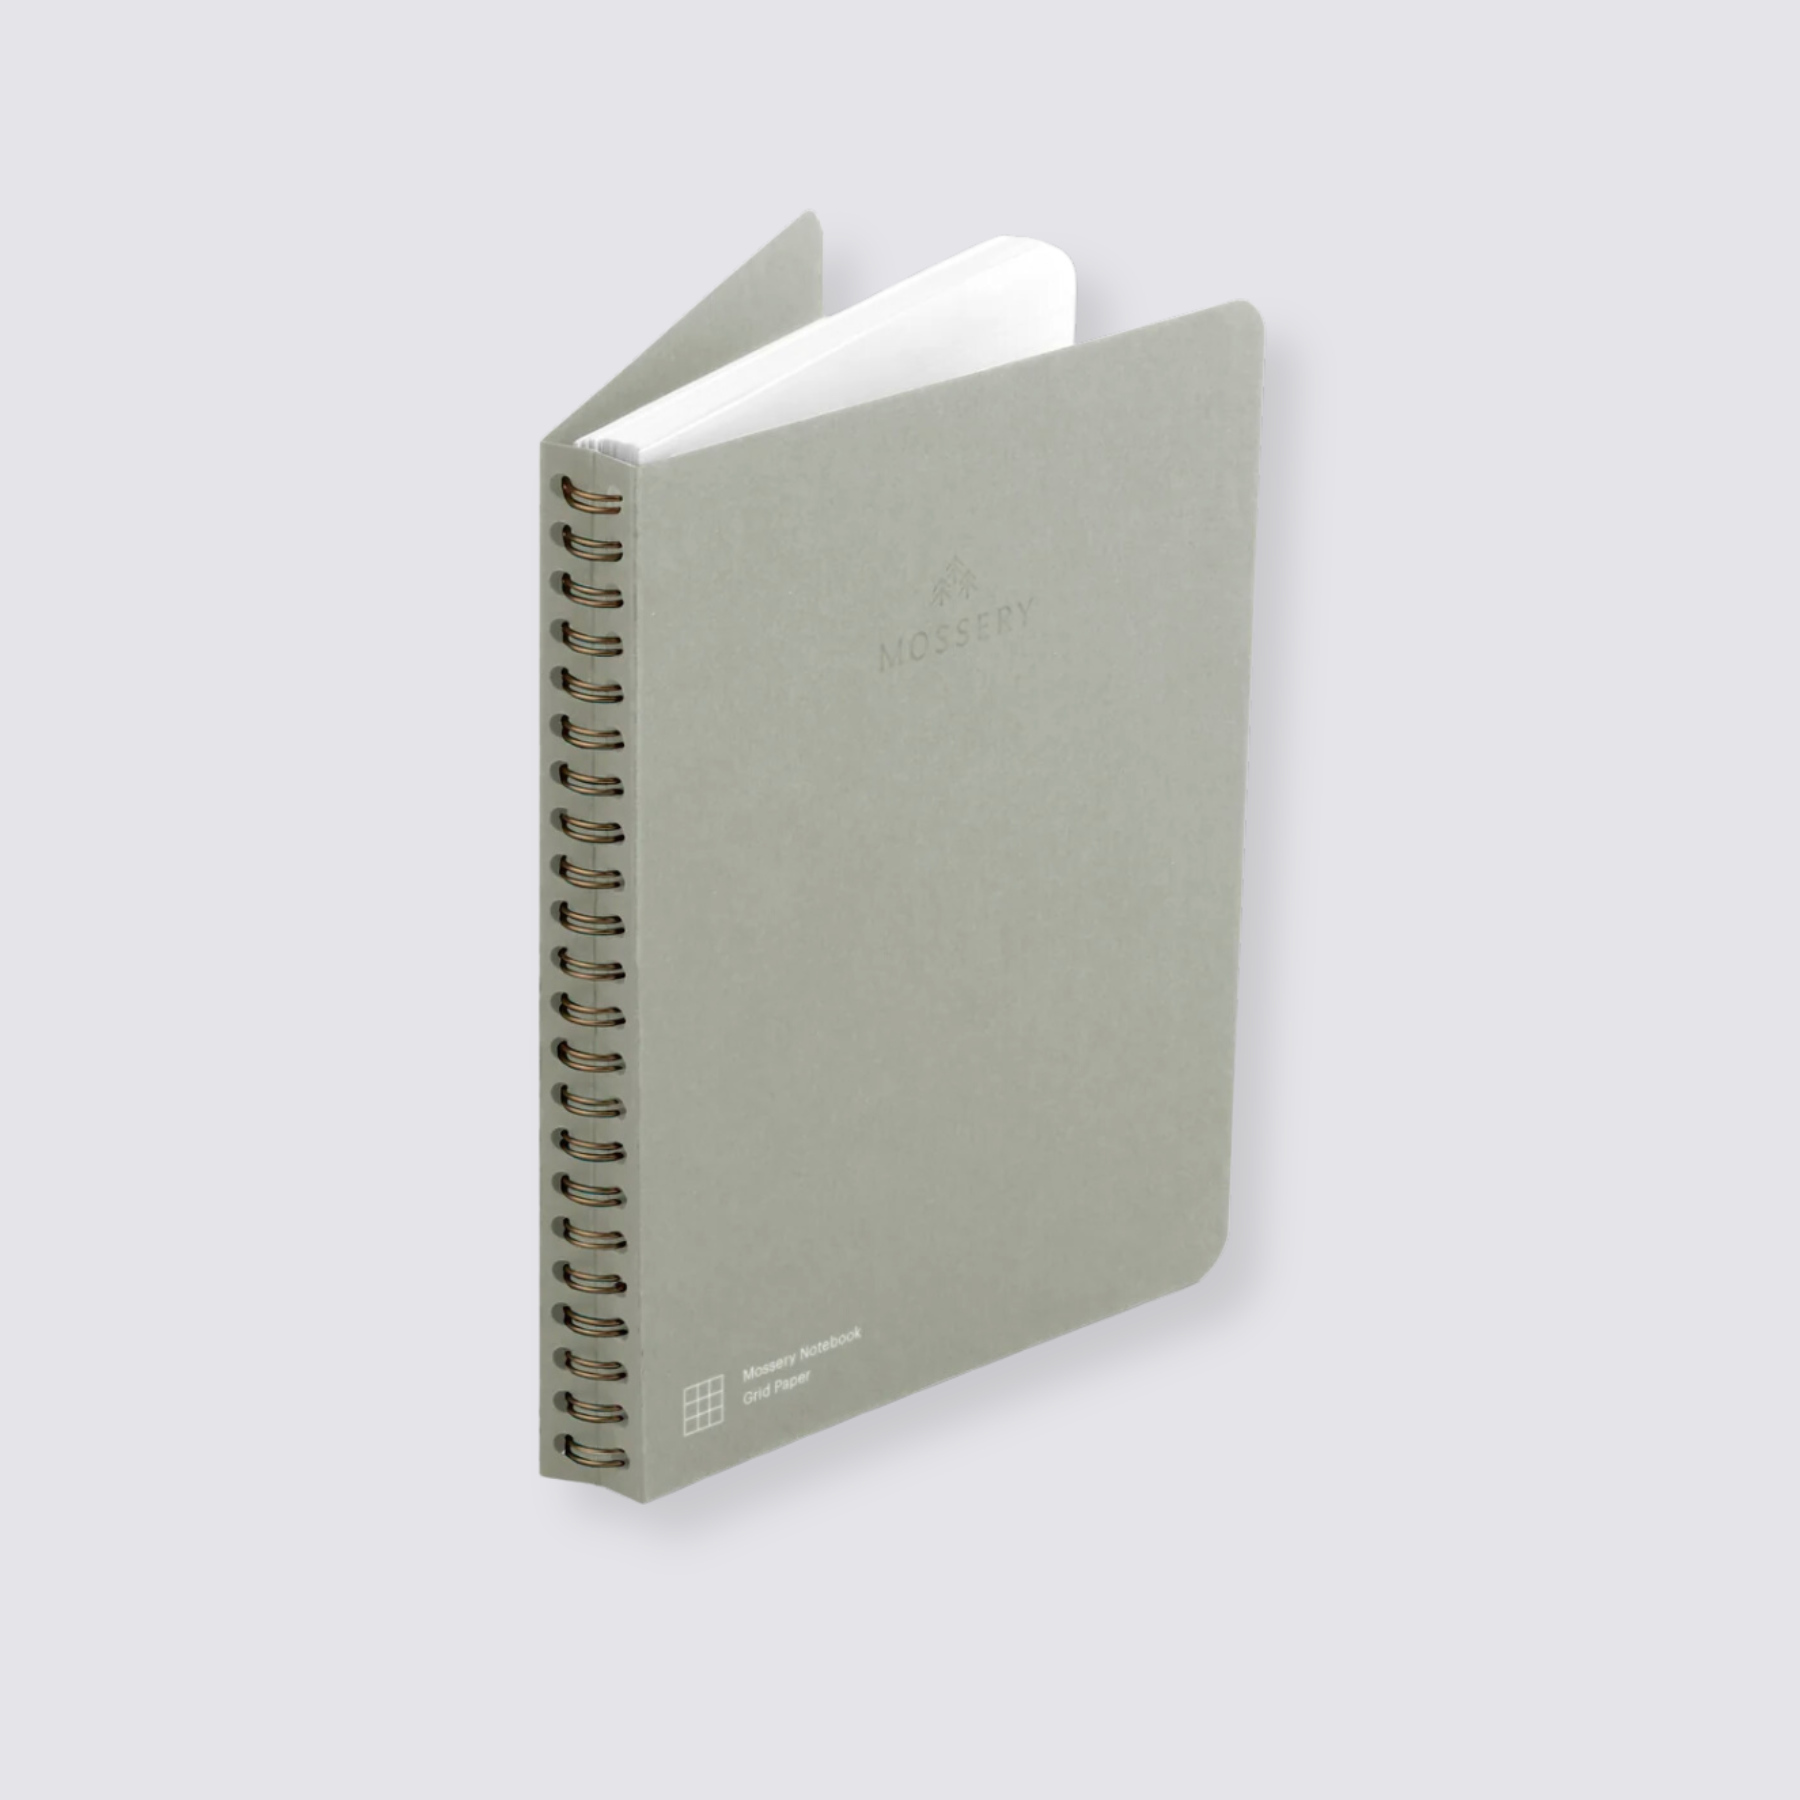 Wirebound notebook refill grid paper